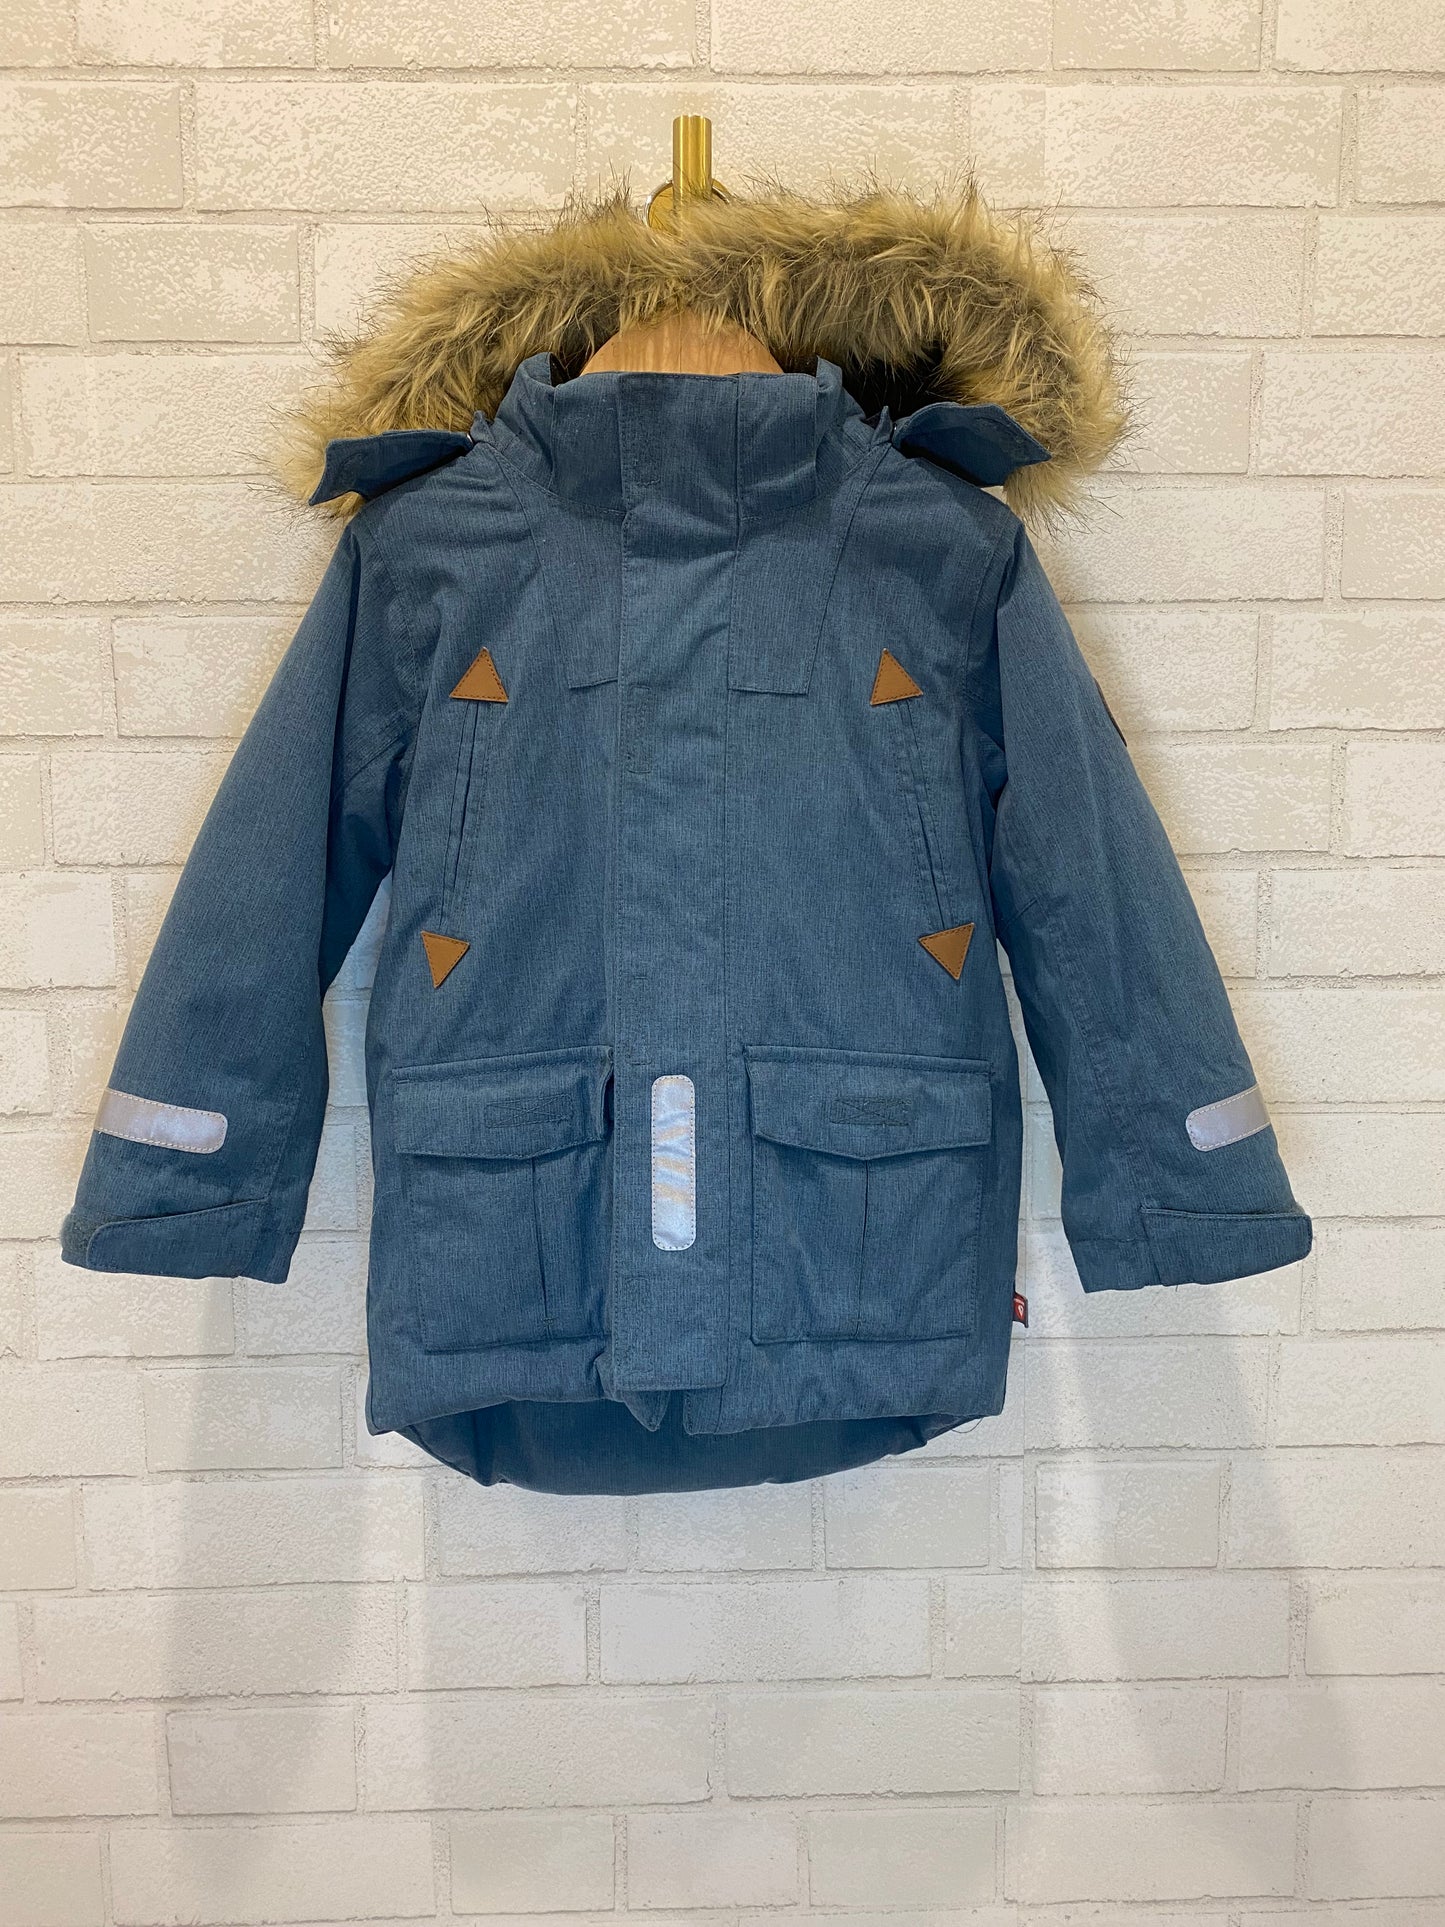 POLARN O PYRET winter jacket/2-3Y